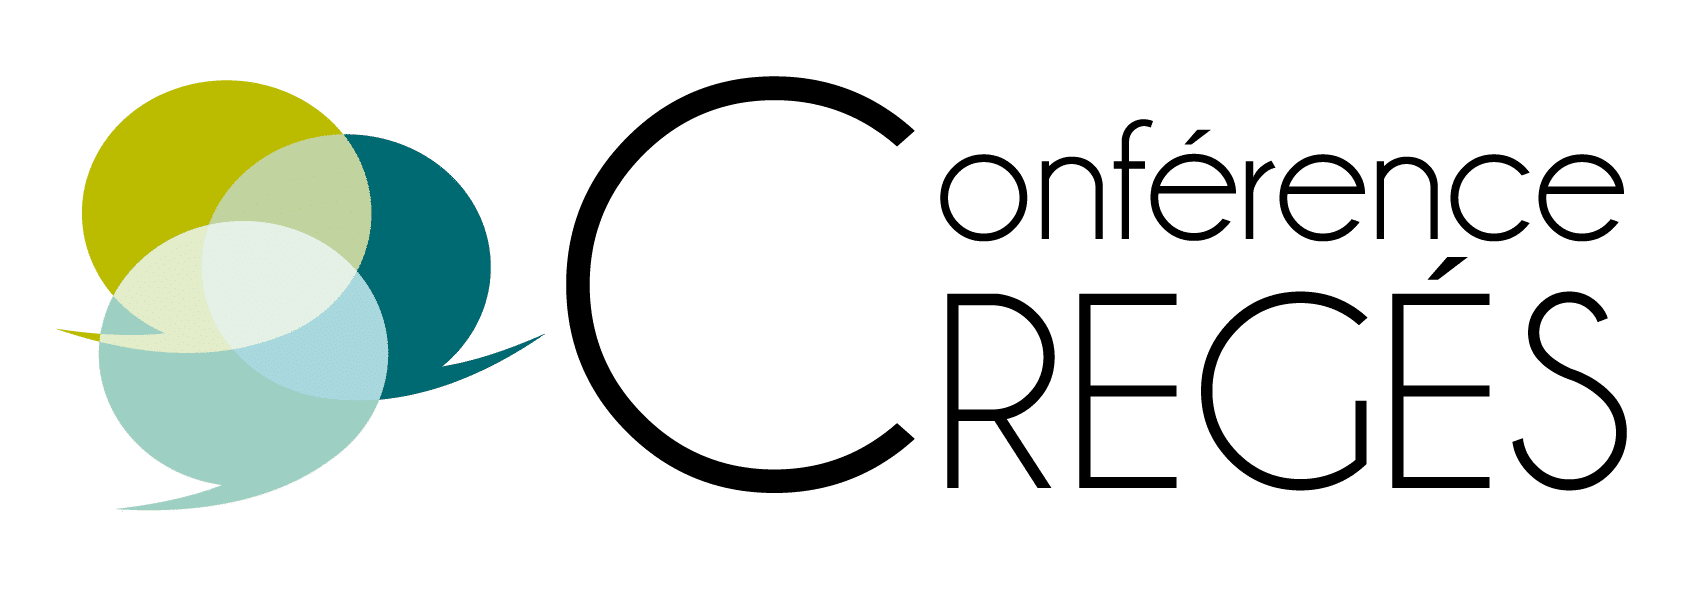 conferences-creges